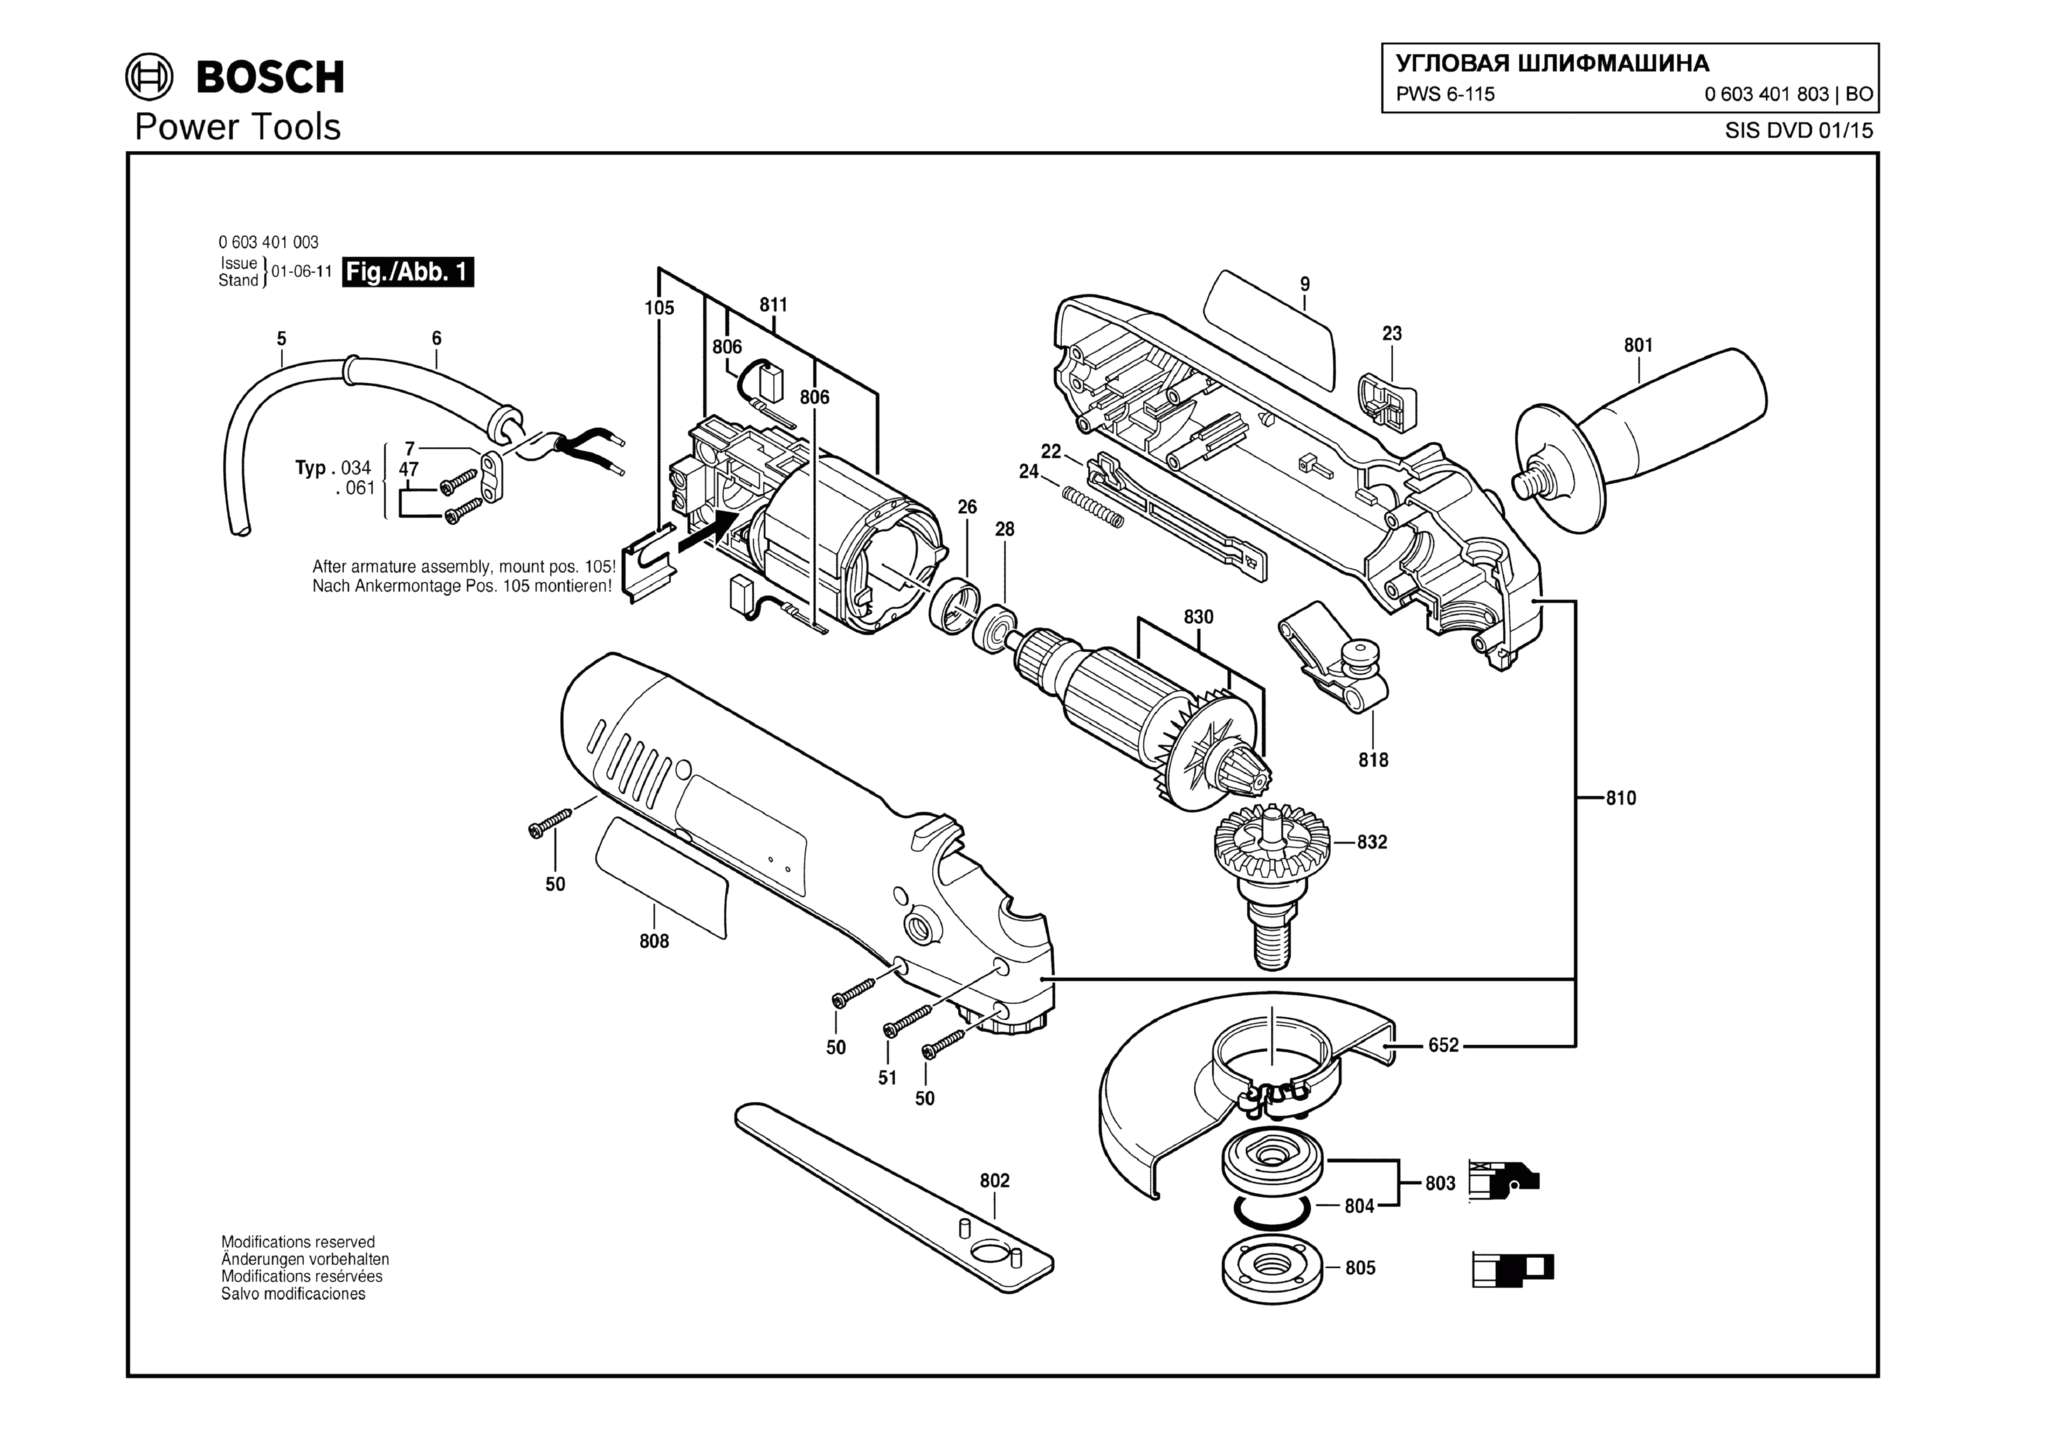 Запчасти, схема и деталировка Bosch PWS 6-115 (ТИП 0603401803)